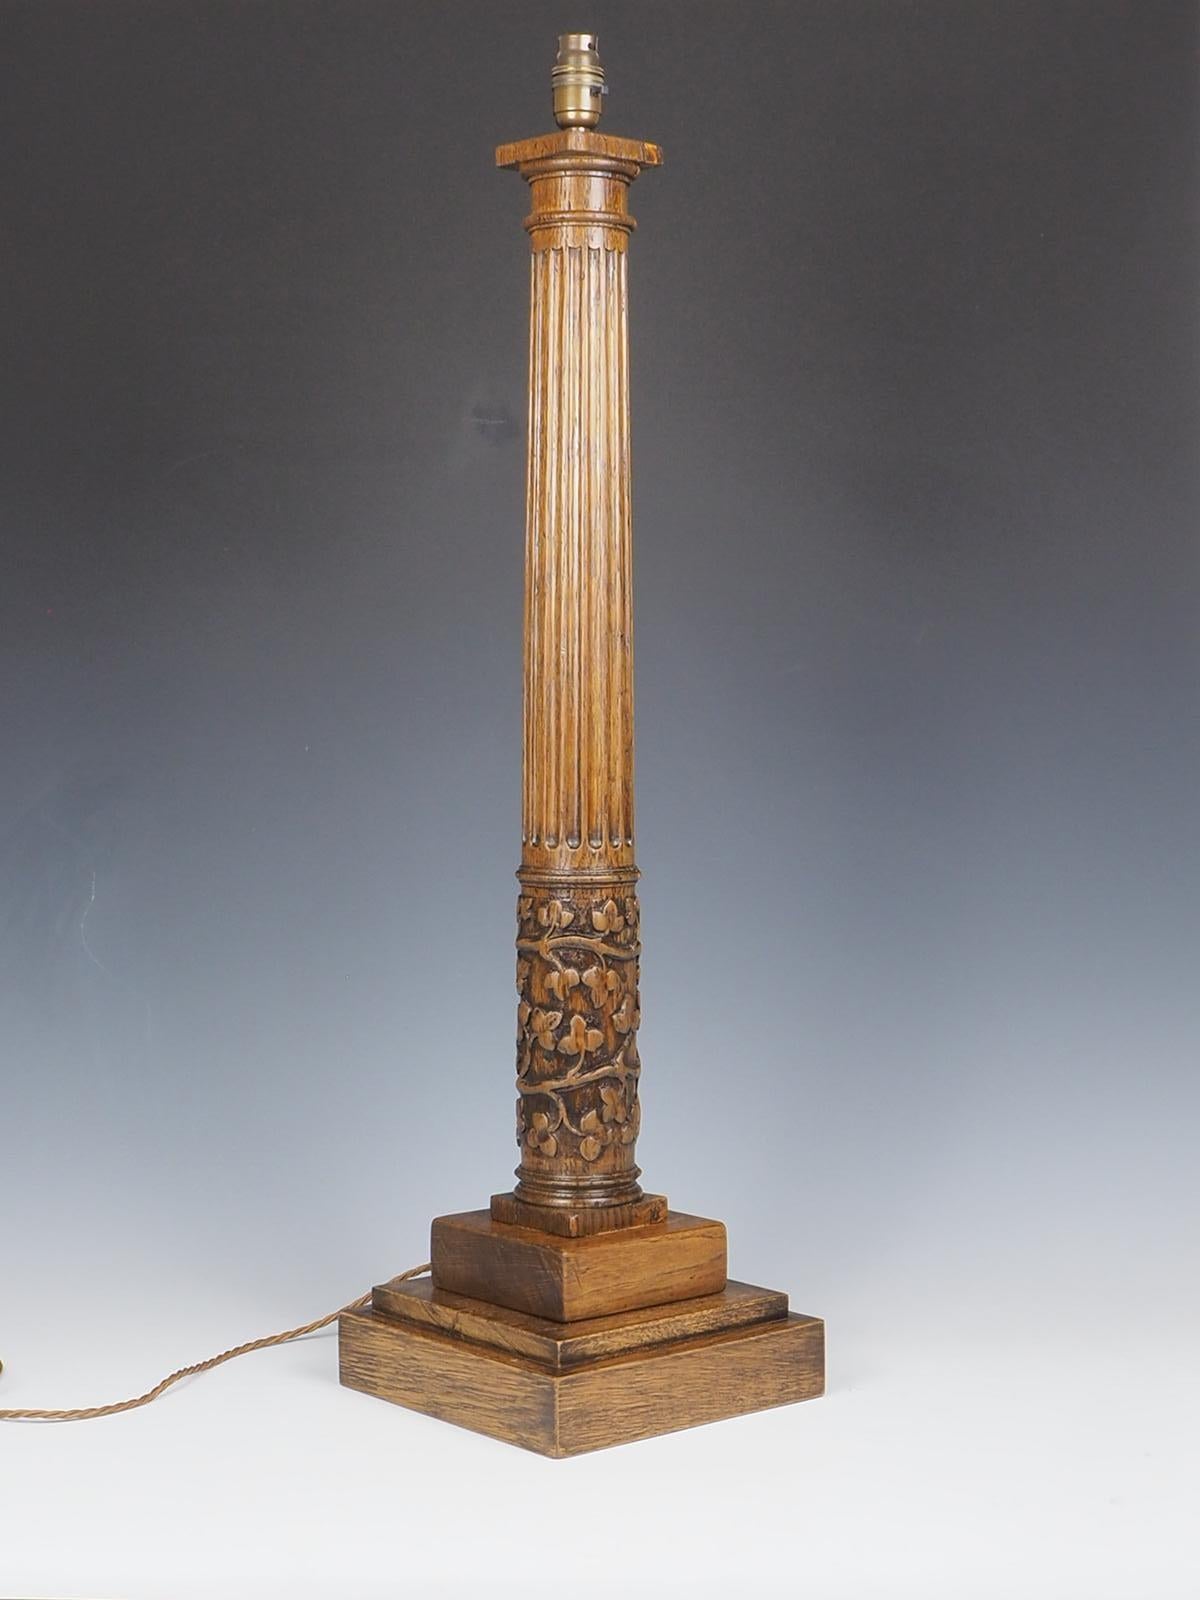 Die antike korinthische Tischlampe aus Eichenholz ist ein atemberaubendes Stück, das Eleganz und Raffinesse ausstrahlt. Diese mit viel Liebe zum Detail gefertigte Lampe zeichnet sich durch ihr kunstvoll geschnitztes Blattwerk am Sockel aus. Der